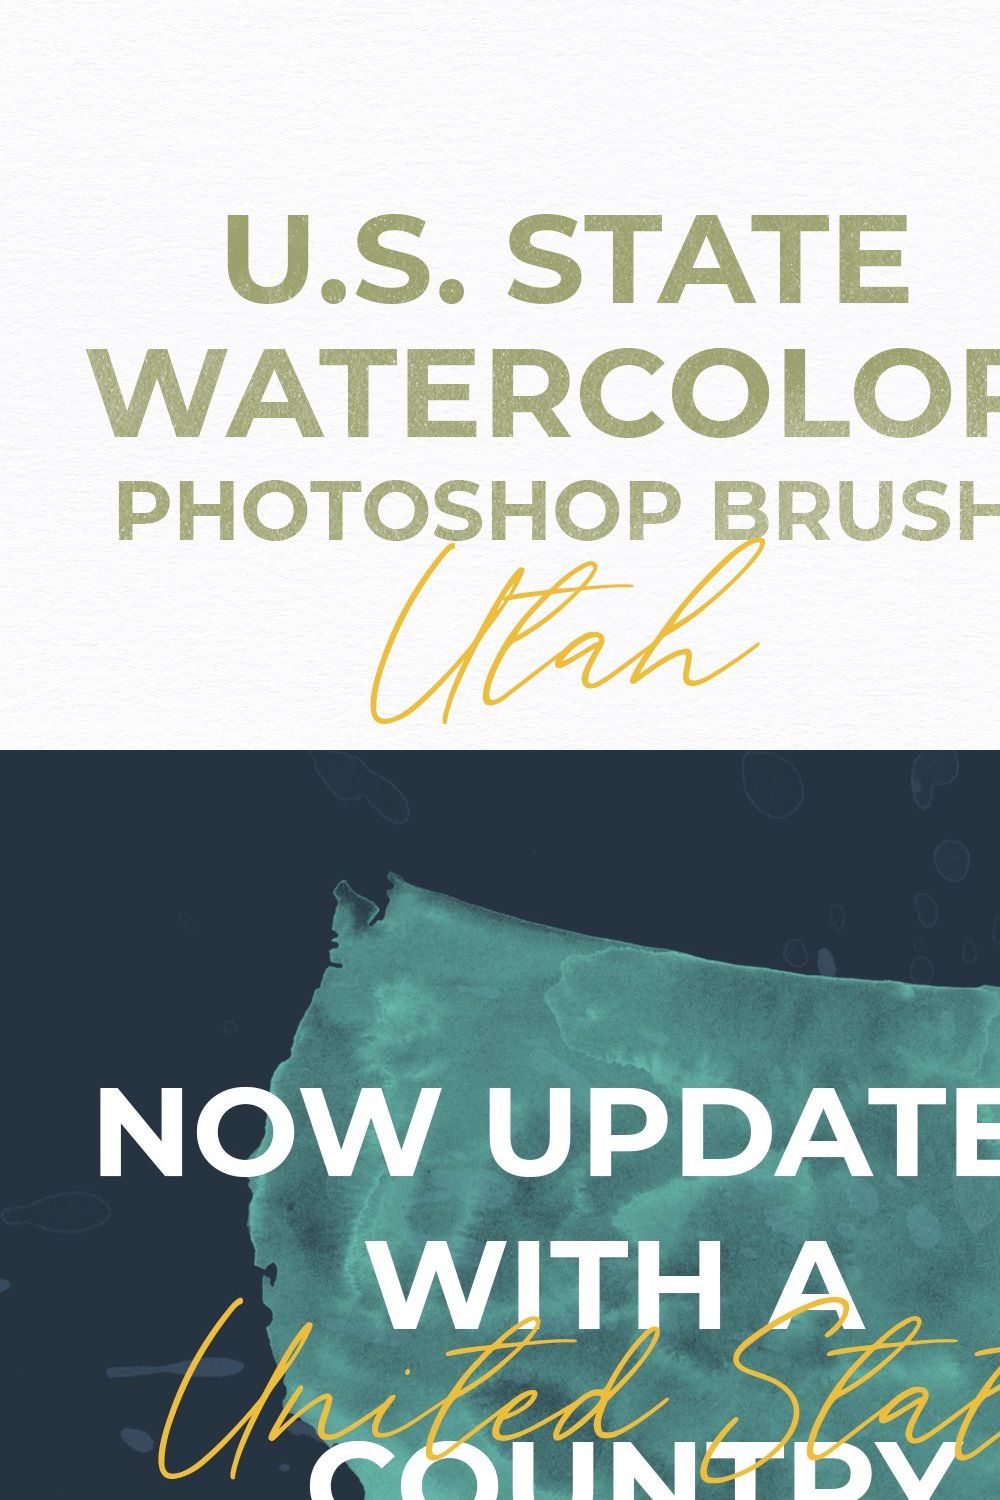 Utah US Watercolor PS Brush pinterest preview image.